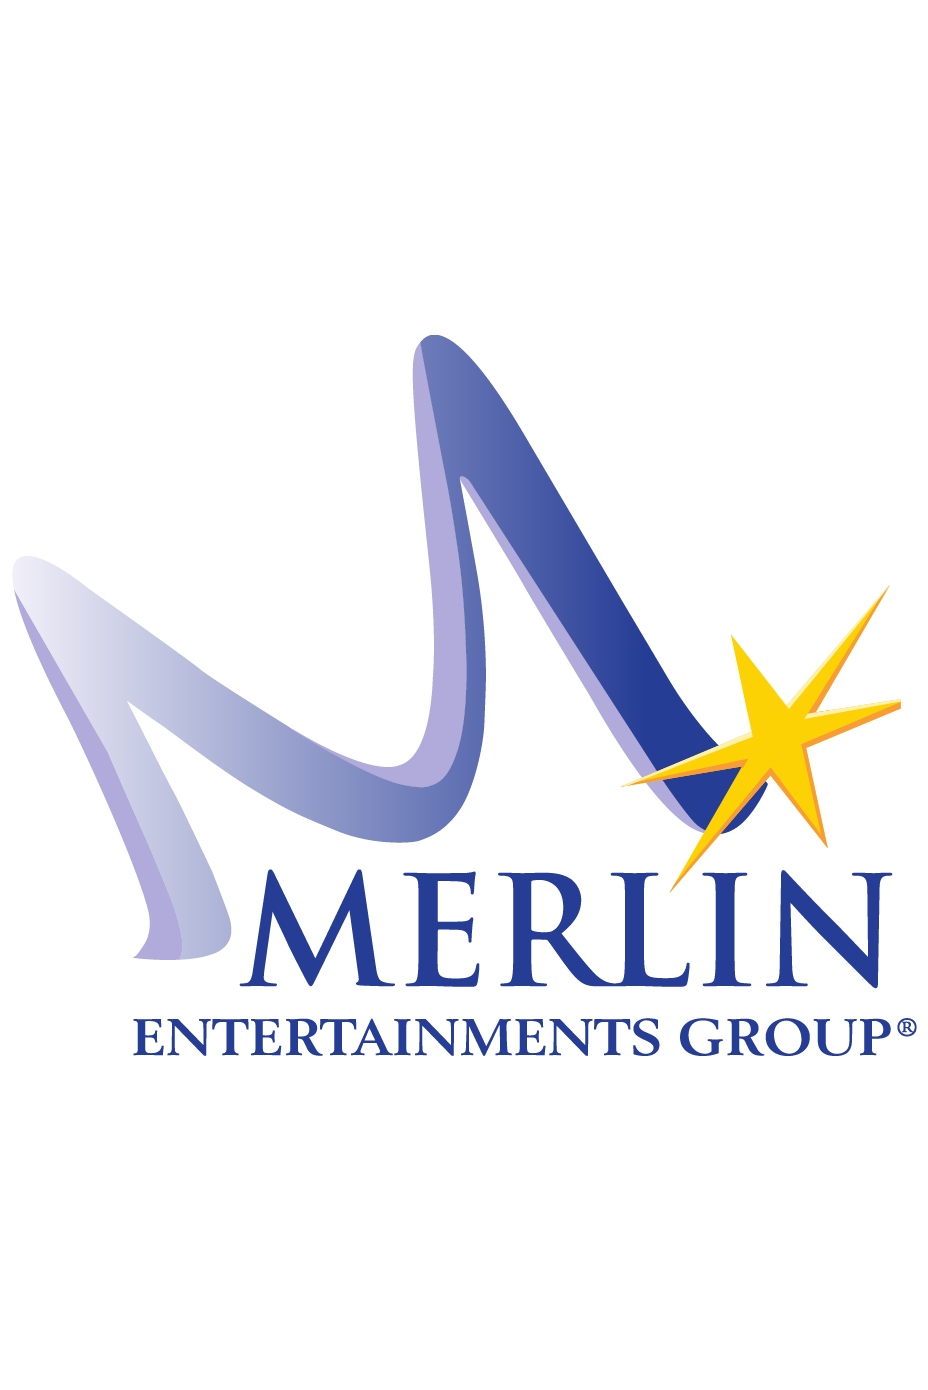 Merlin-01-01-01